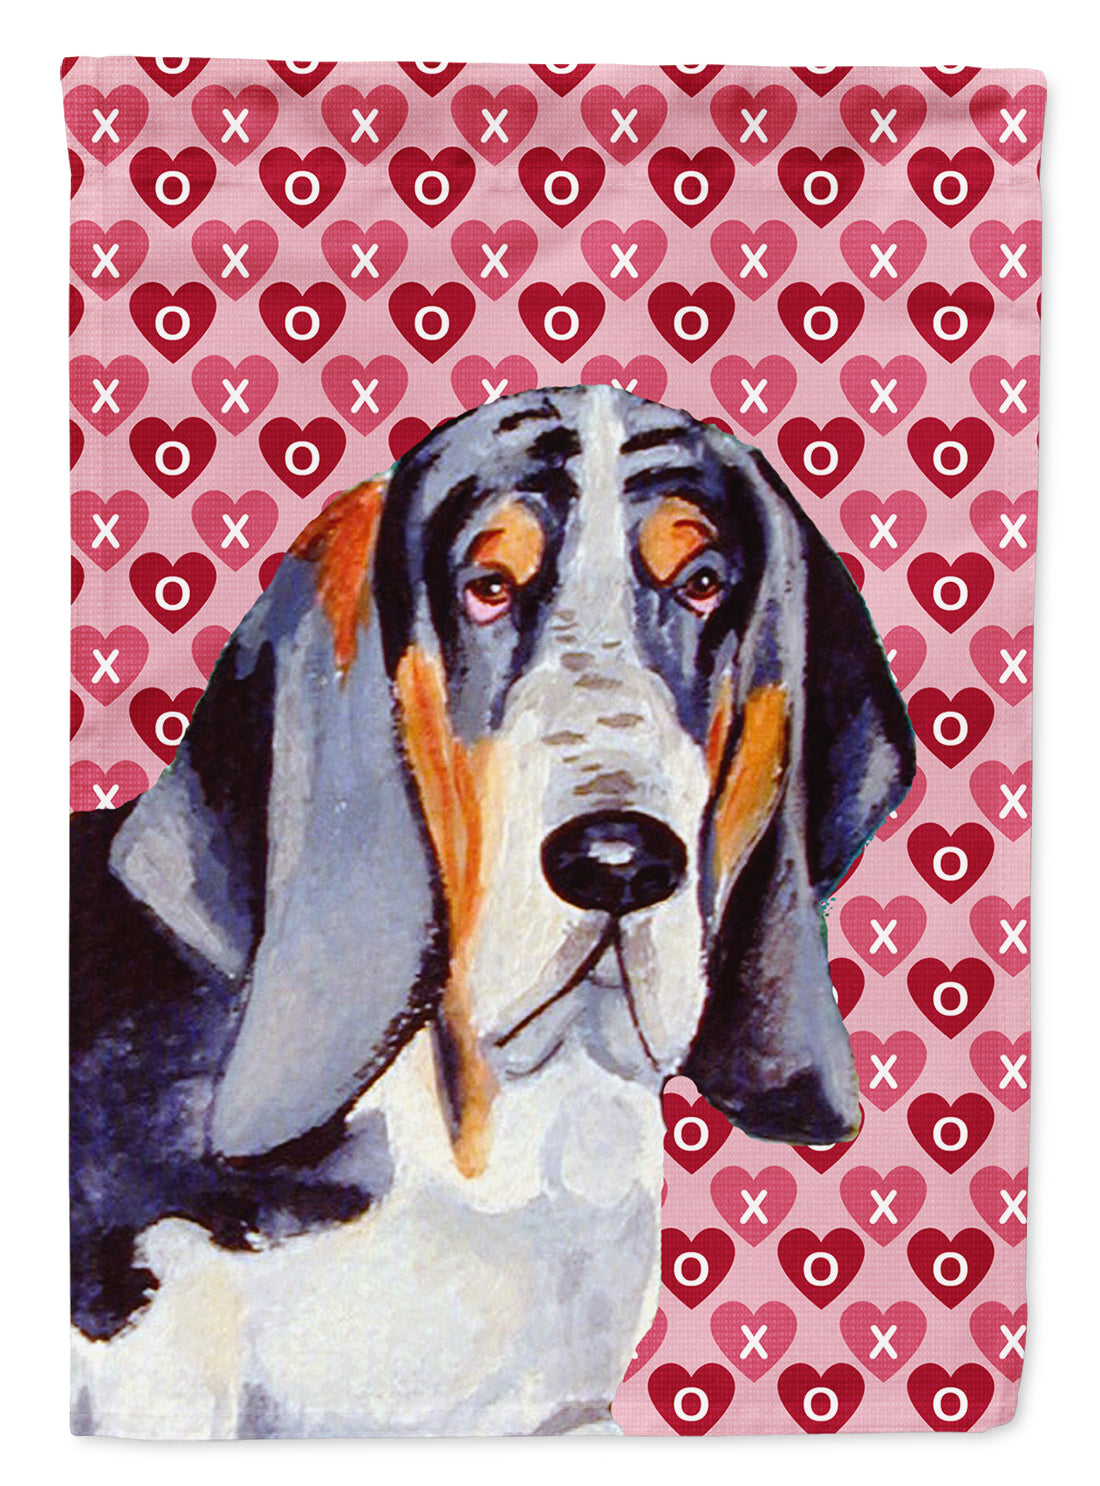 Basset Hound Hearts Love and Valentine's Day Portrait Flag Garden Size.